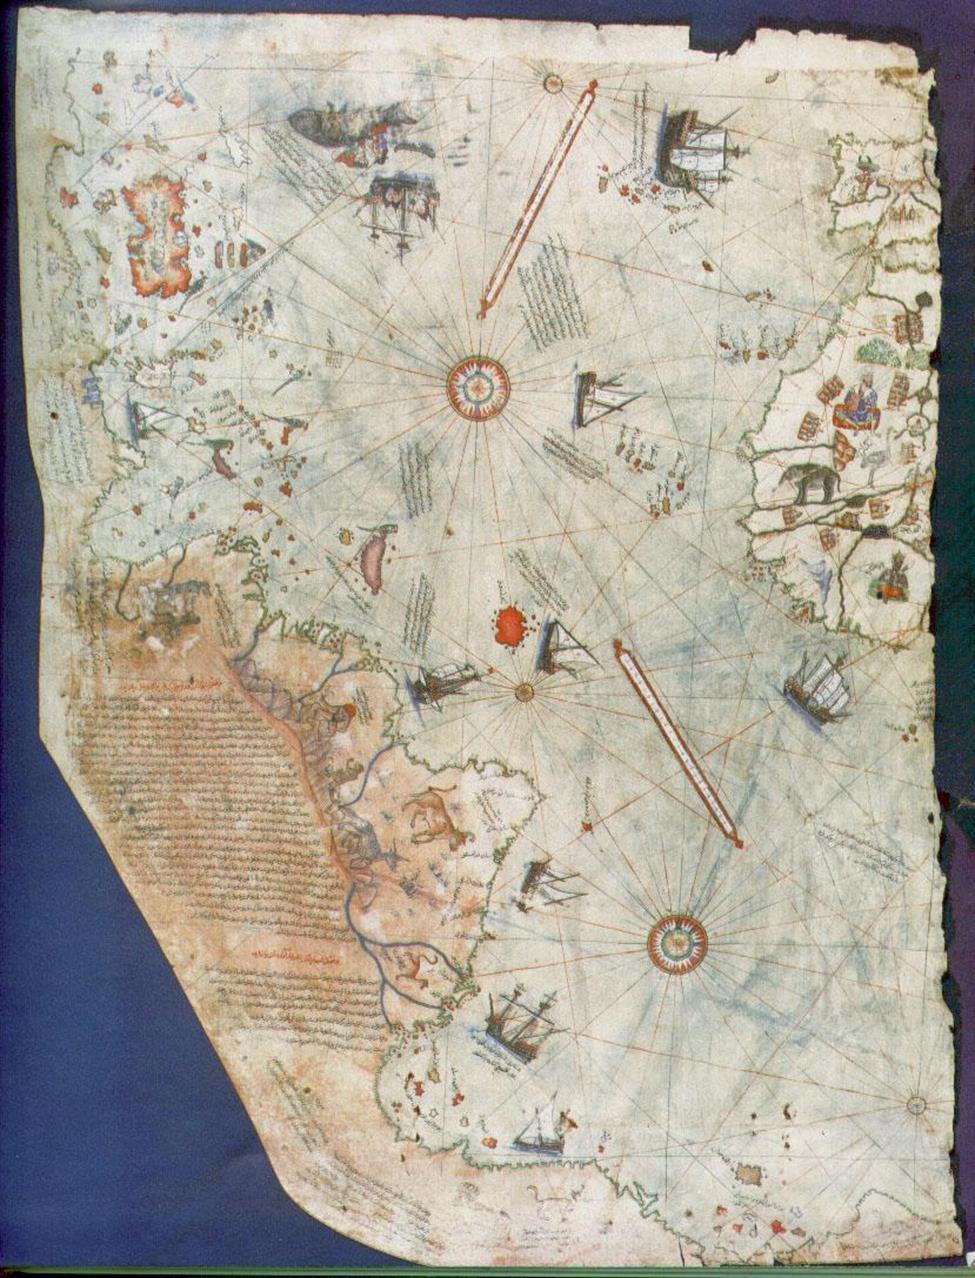 Ο χάρτης που χρησιμοποίησε ο Πίρι Ρέις Οι μελέτες του καθηγητή Τσάρλς Χαπγκουντ το 1960 σχετικά με τους χάρτες, μας εξηγούν πως τα πρωτότυπα που αντιγράφουν οι χάρτες πρέπει να ήταν φωτογραφίες που